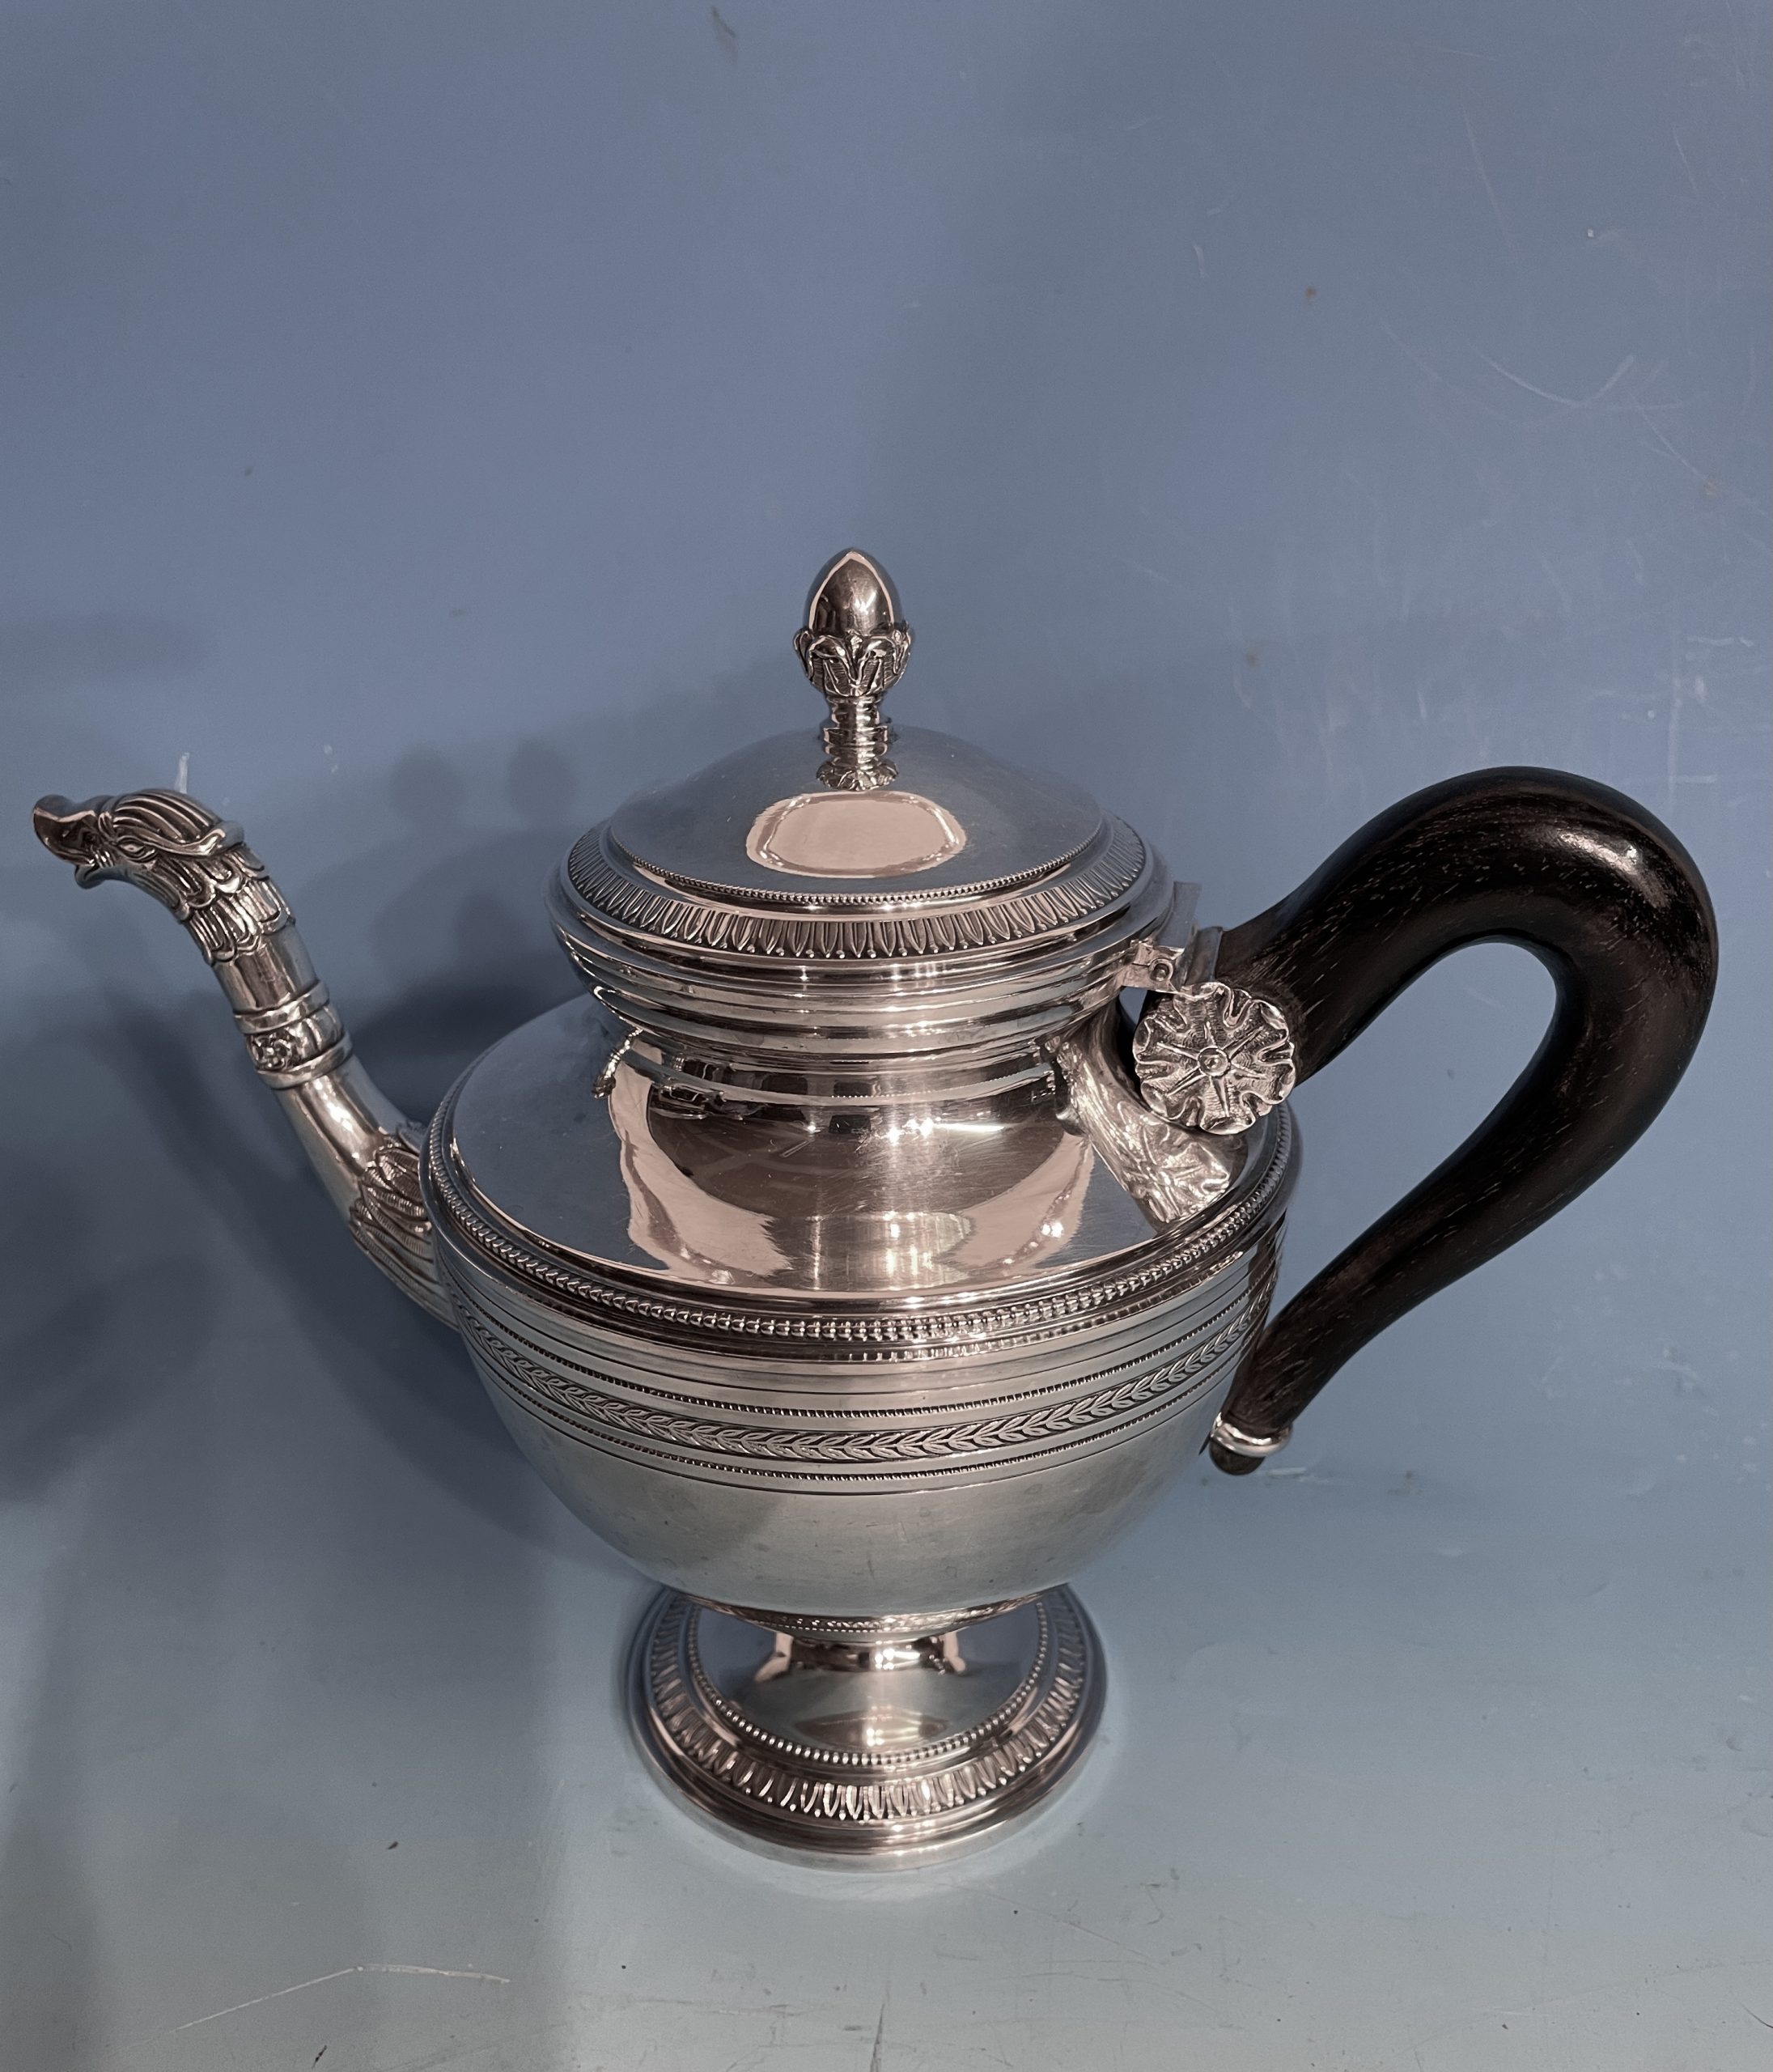 Blue Teapot Set / Turkish Tea Pot Set, Turkish Samovar Tea Maker, Tea  Kettle for Loose Leaf Tea